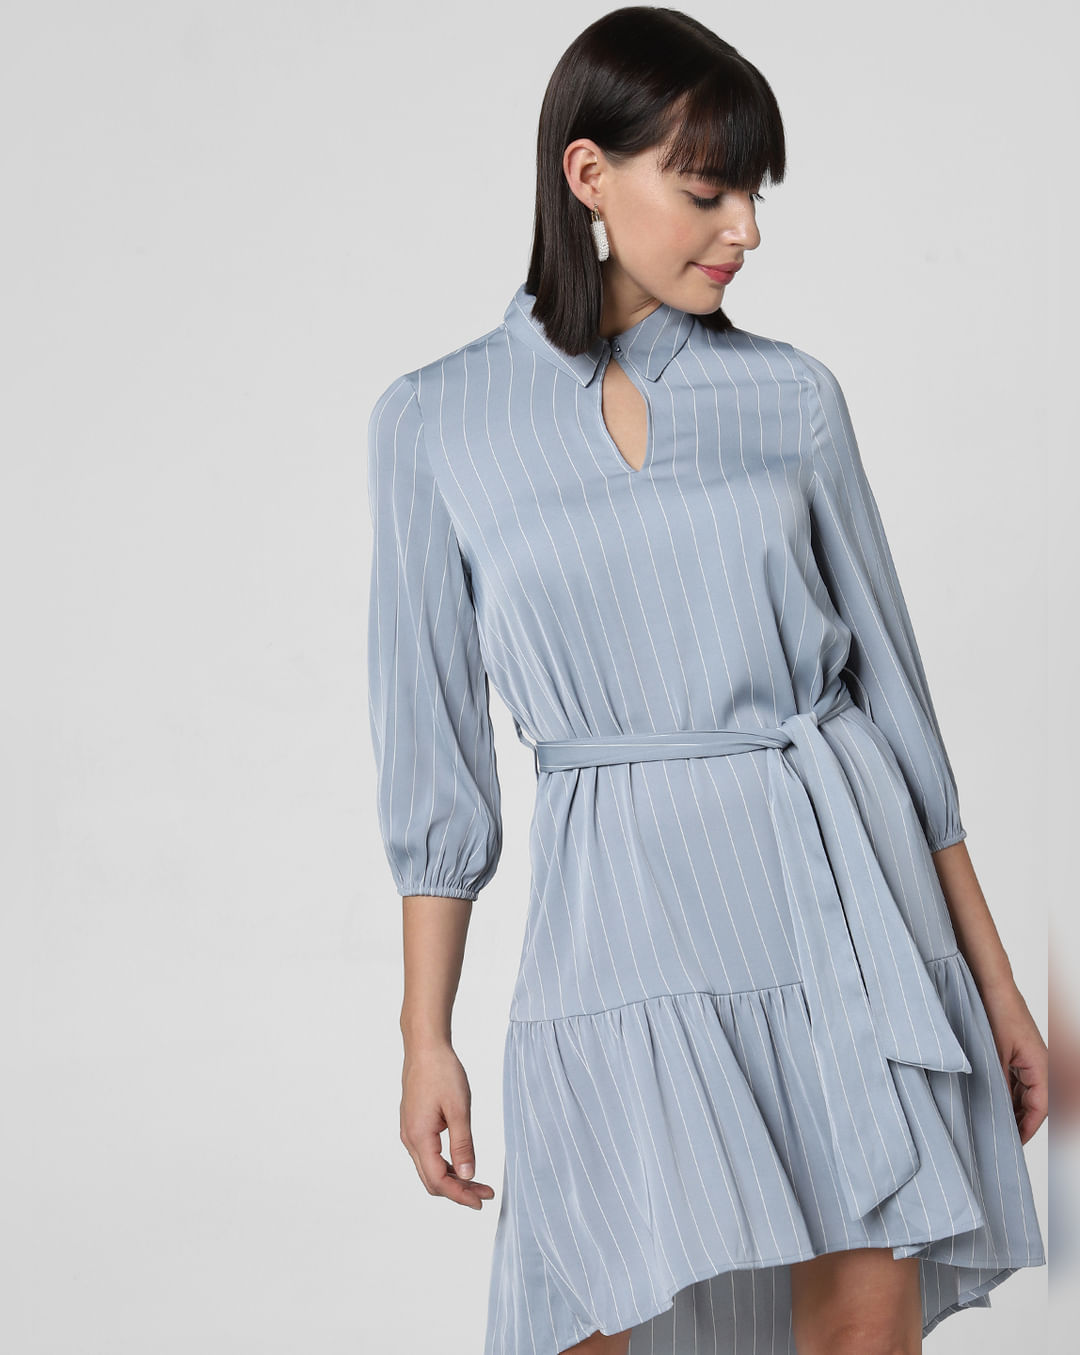 lure døråbning Hejse Shift Dresses For Women - Buy Blue Striped Belted Shift Dress Online In  India.